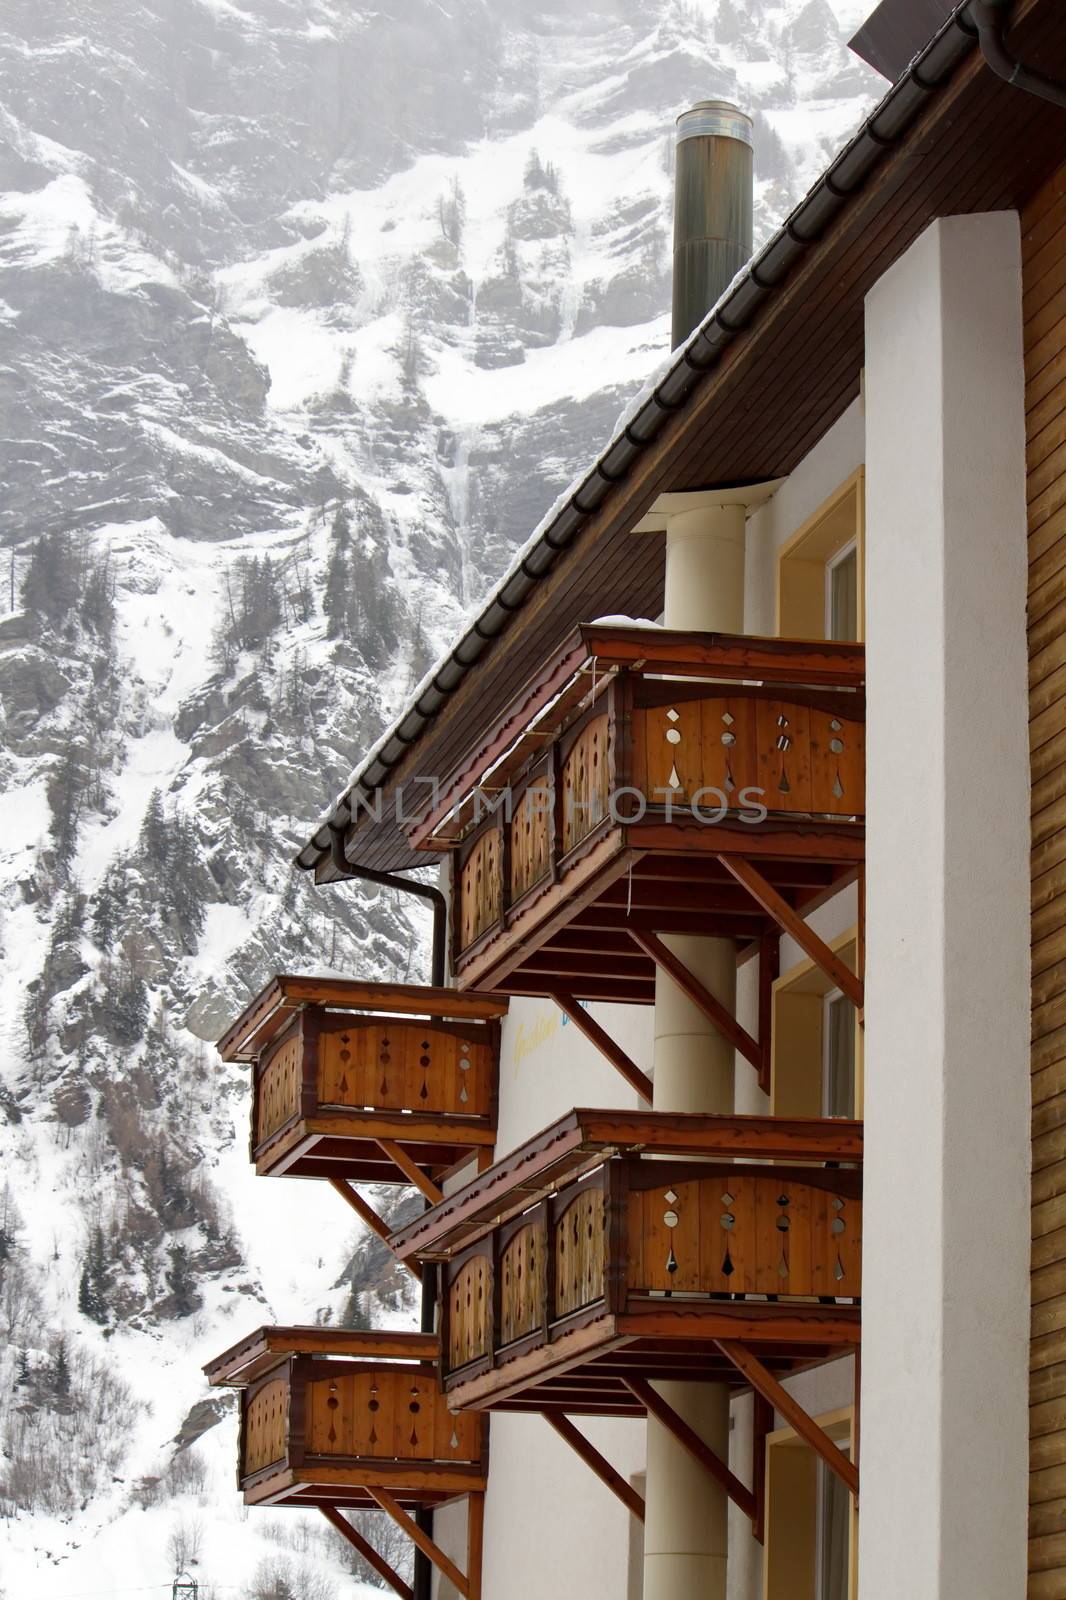 Wooden balconies in winter by Elenaphotos21